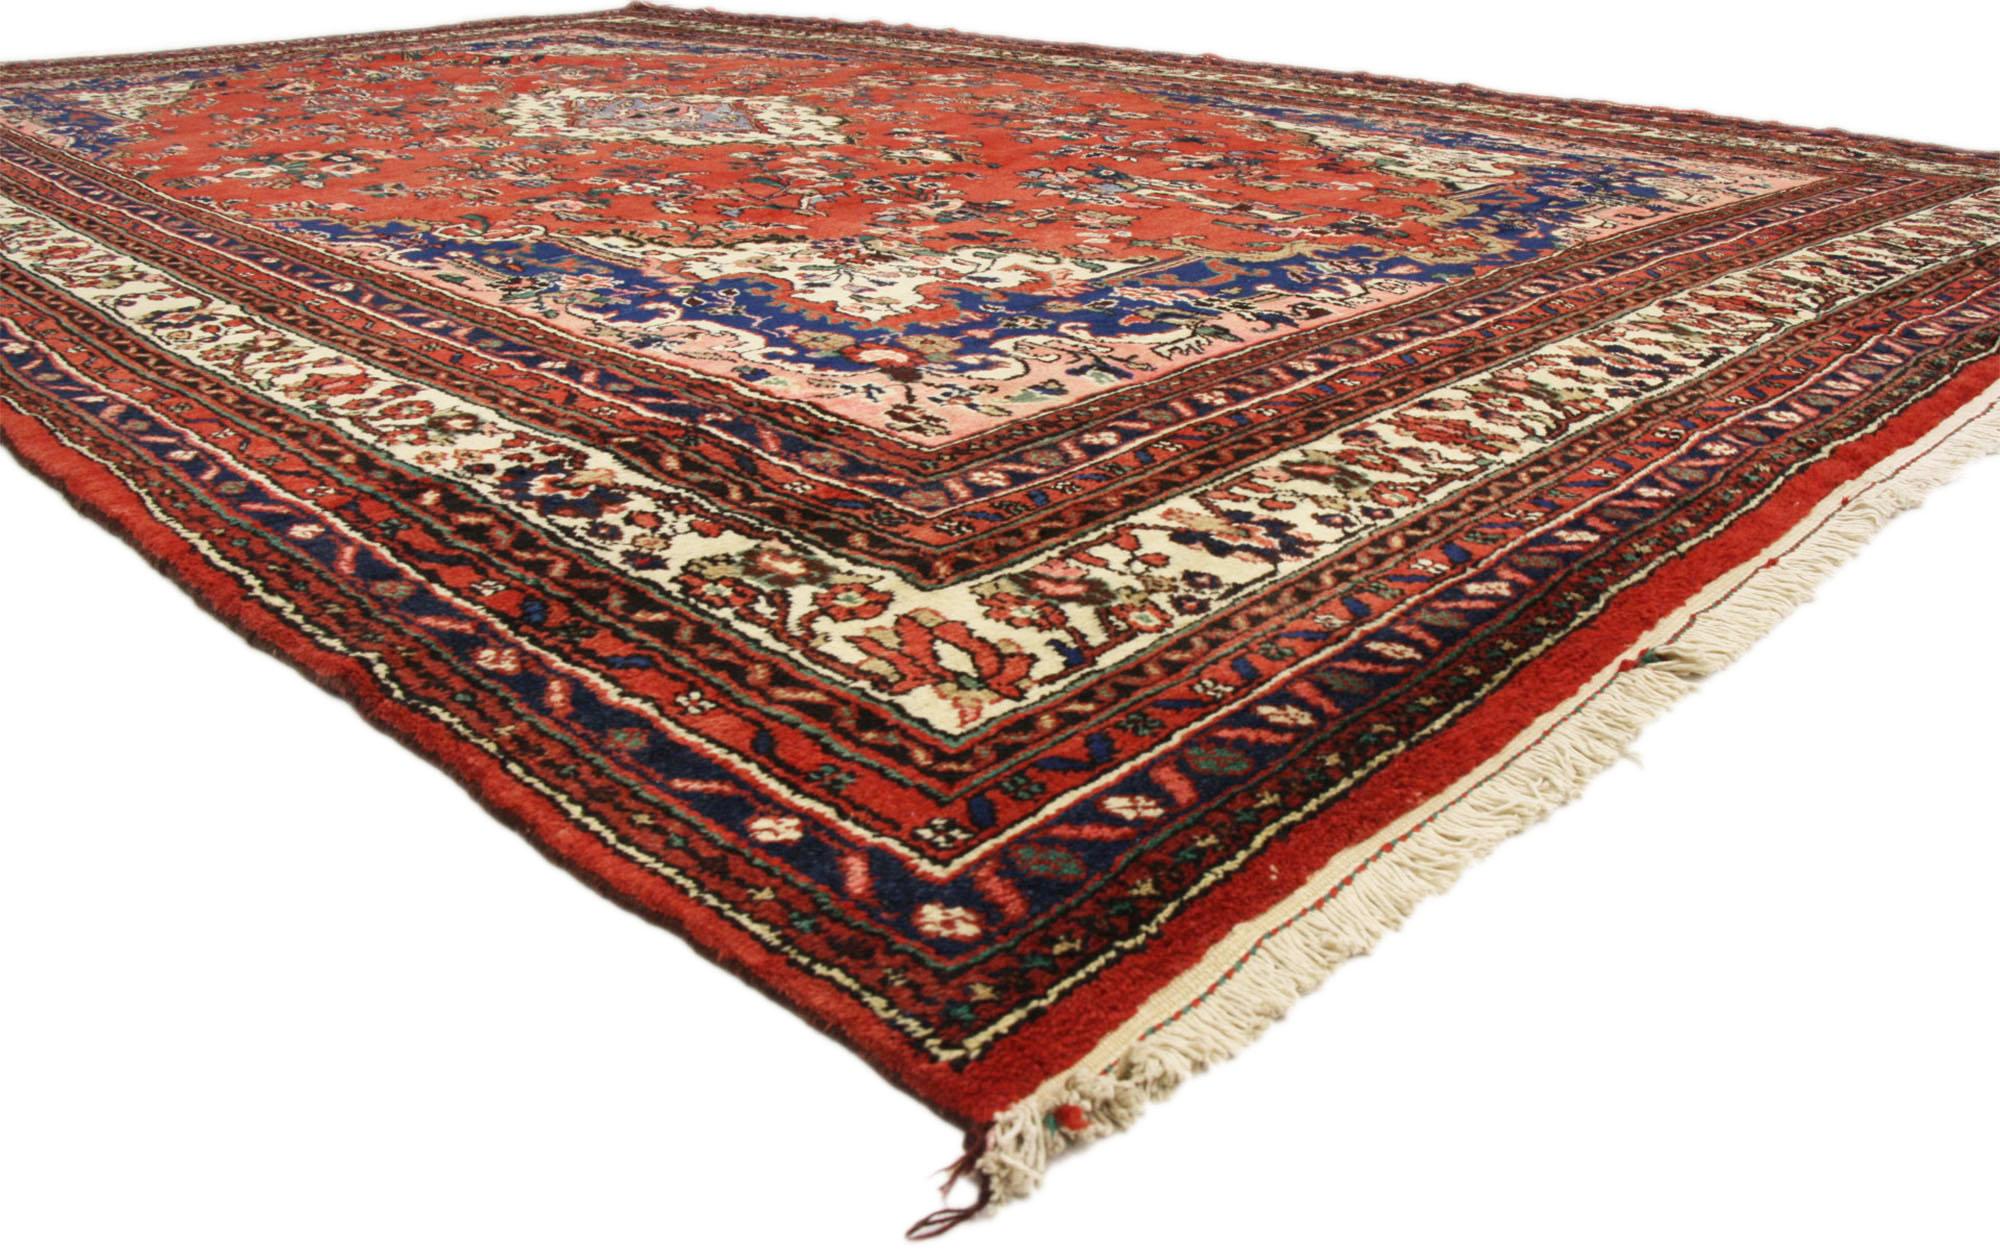 74944 Tapis persan vintage Hamadan, 10'06 x 17'02.
Empruntant un charme royal à la sensibilité traditionnelle, ce tapis Hamadan persan vintage en laine nouée à la main est une vision captivante de la beauté tissée. Le motif floral complexe et la